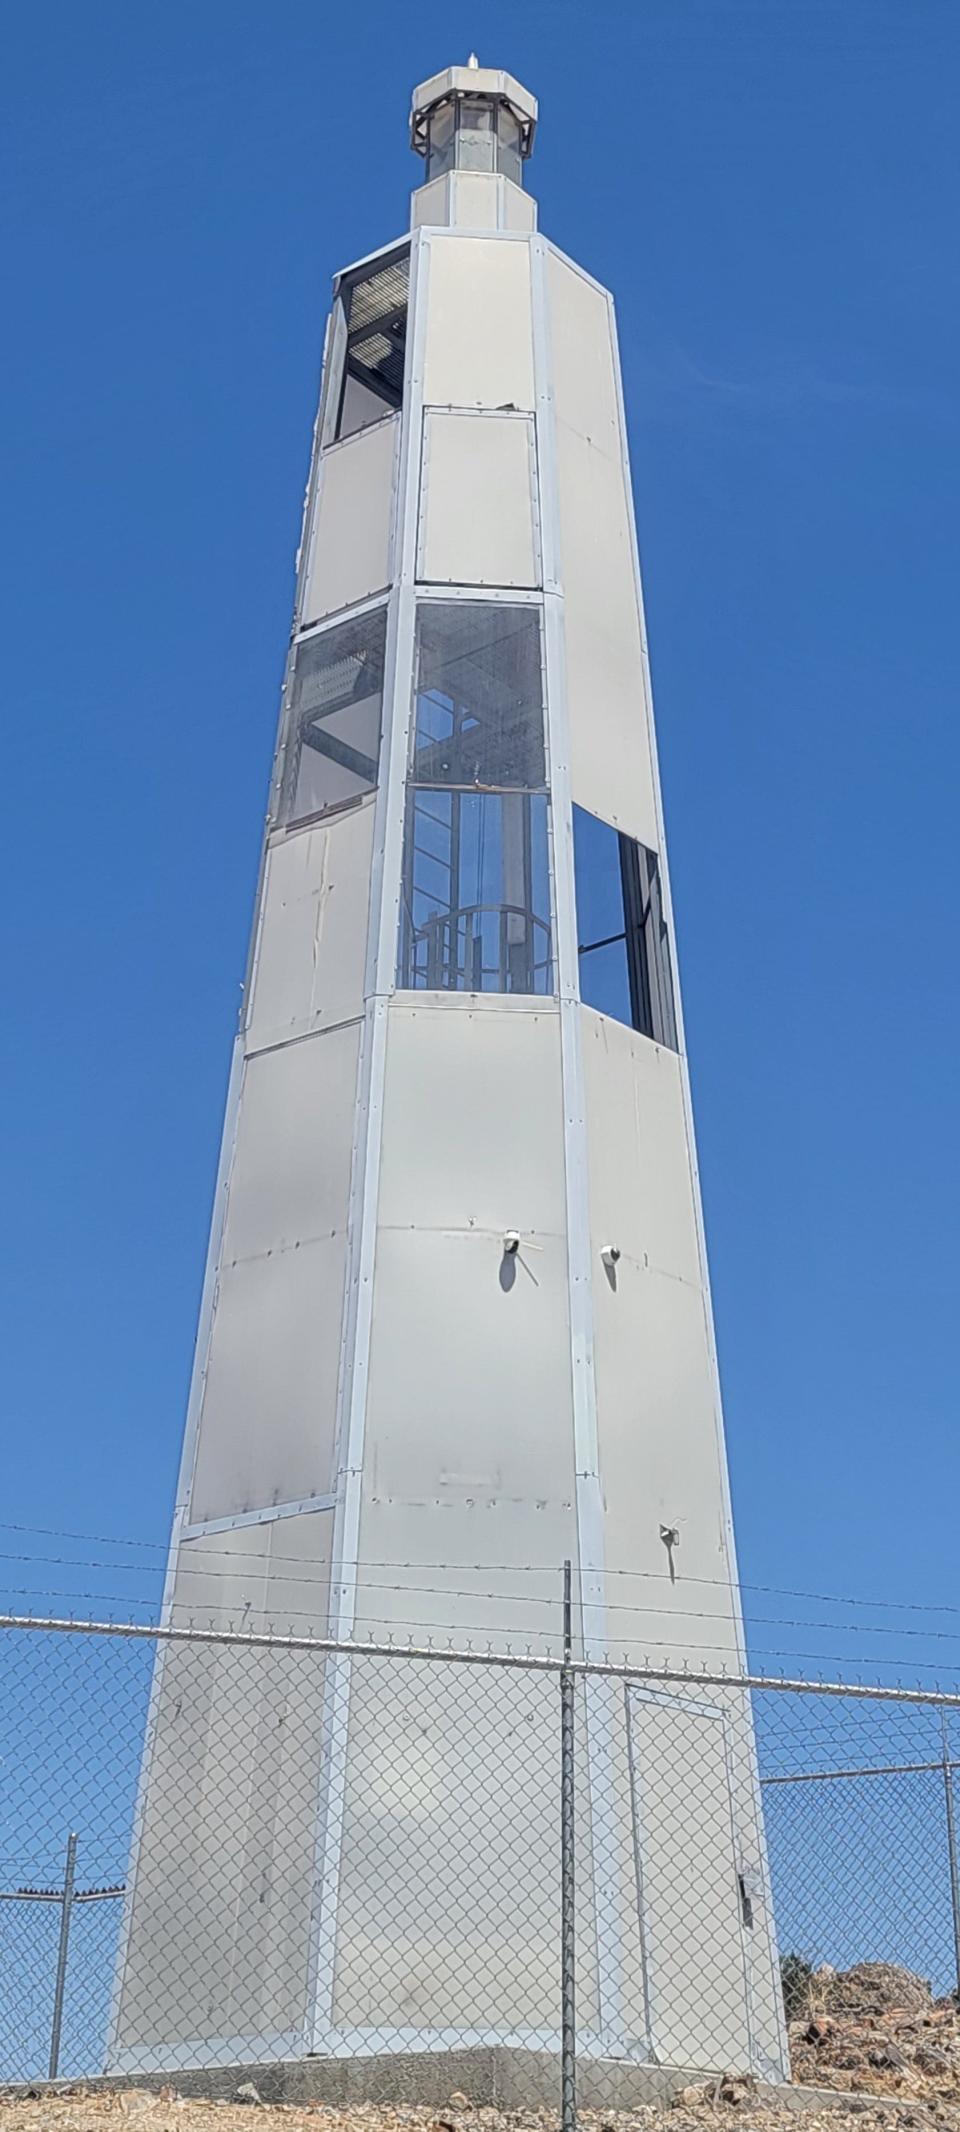 The Desert Lighthouse near Hinkley.